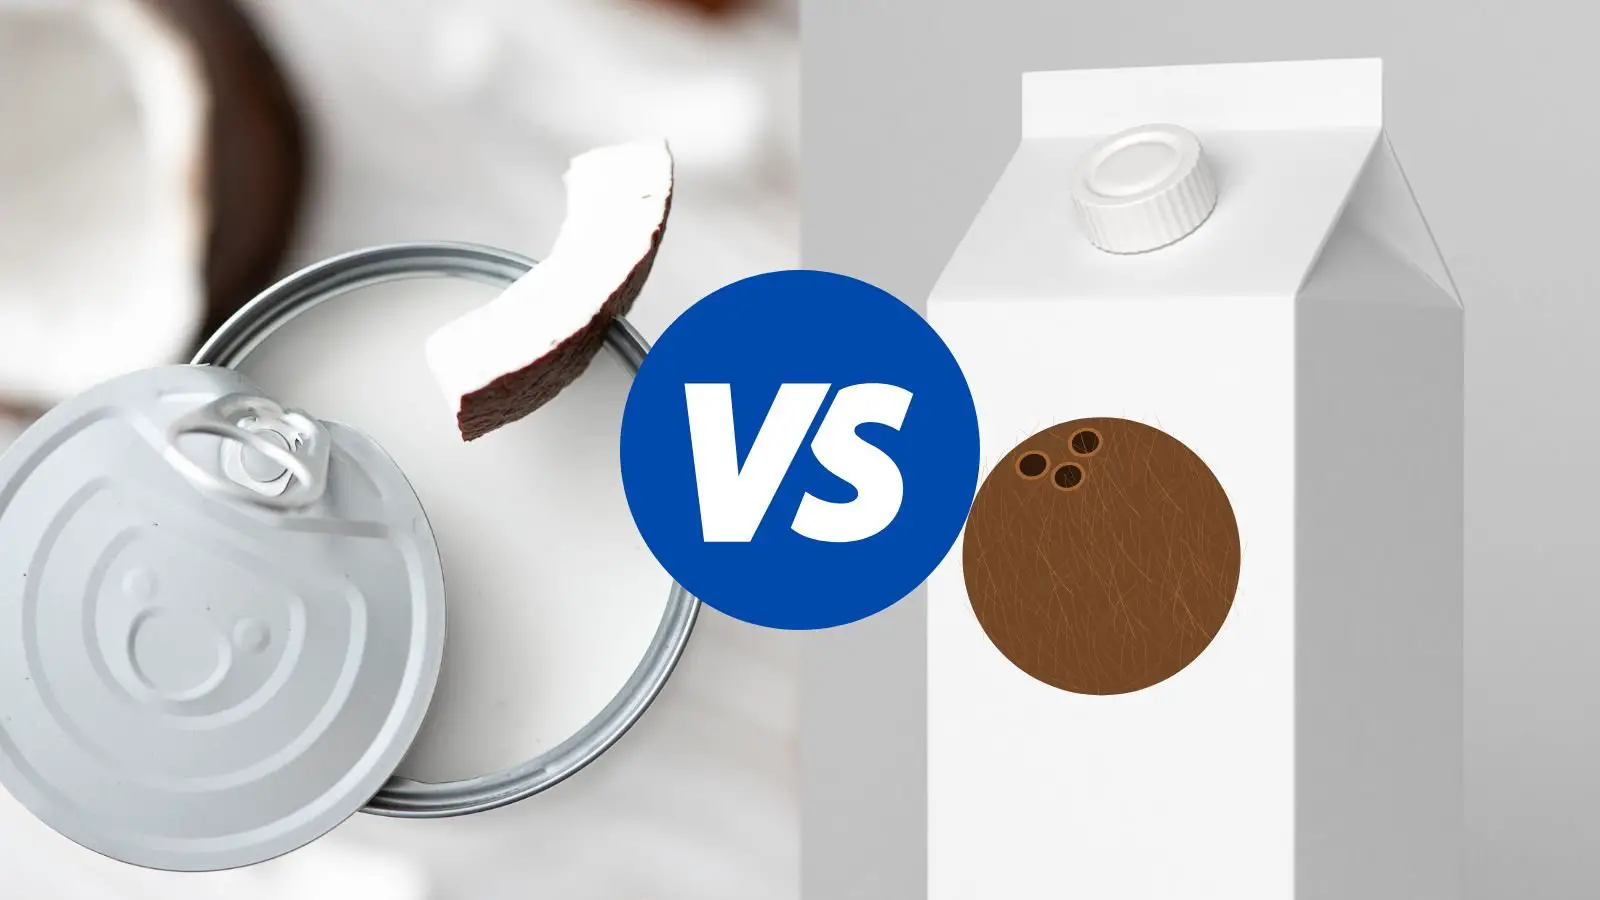 coconut milk in a can vs. carton - familyguidecentral.com